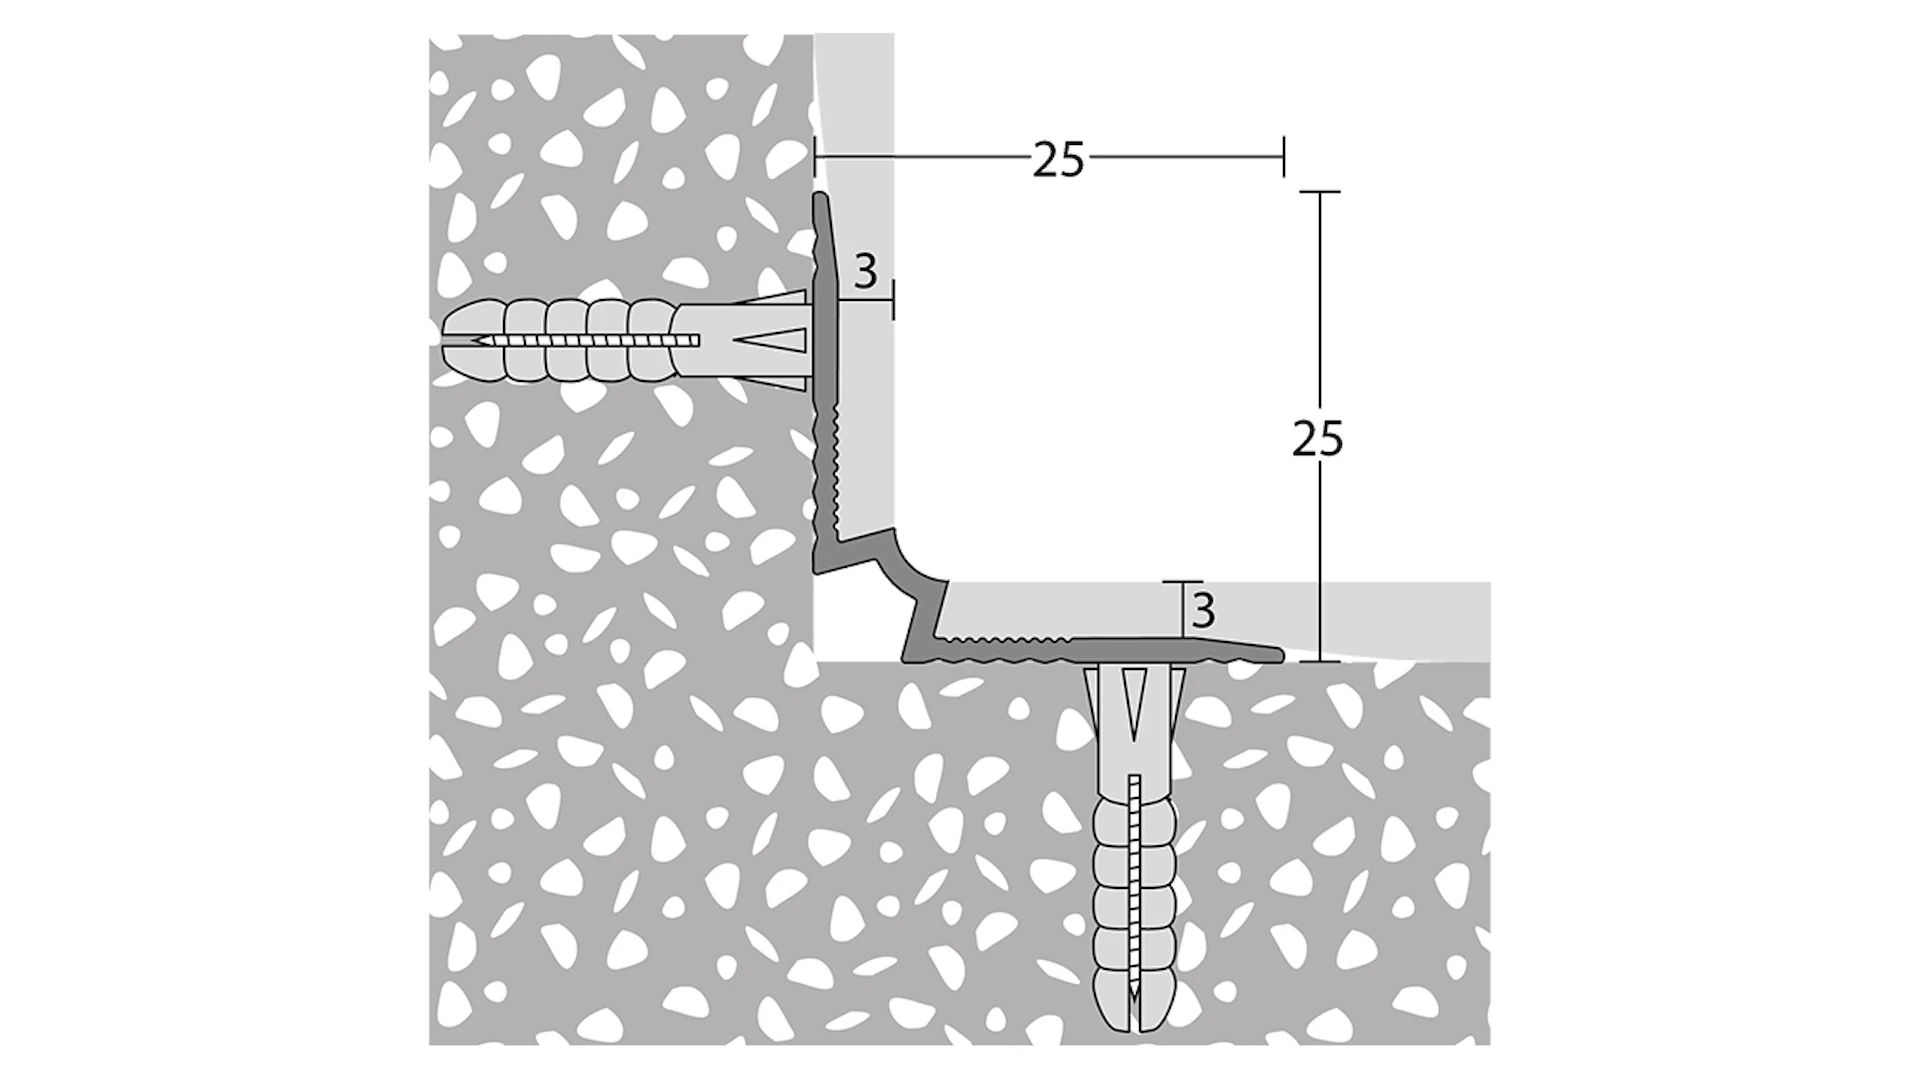 Angolo interno delle scale Prinz - 25 x 25 mm - acciaio inox satinato